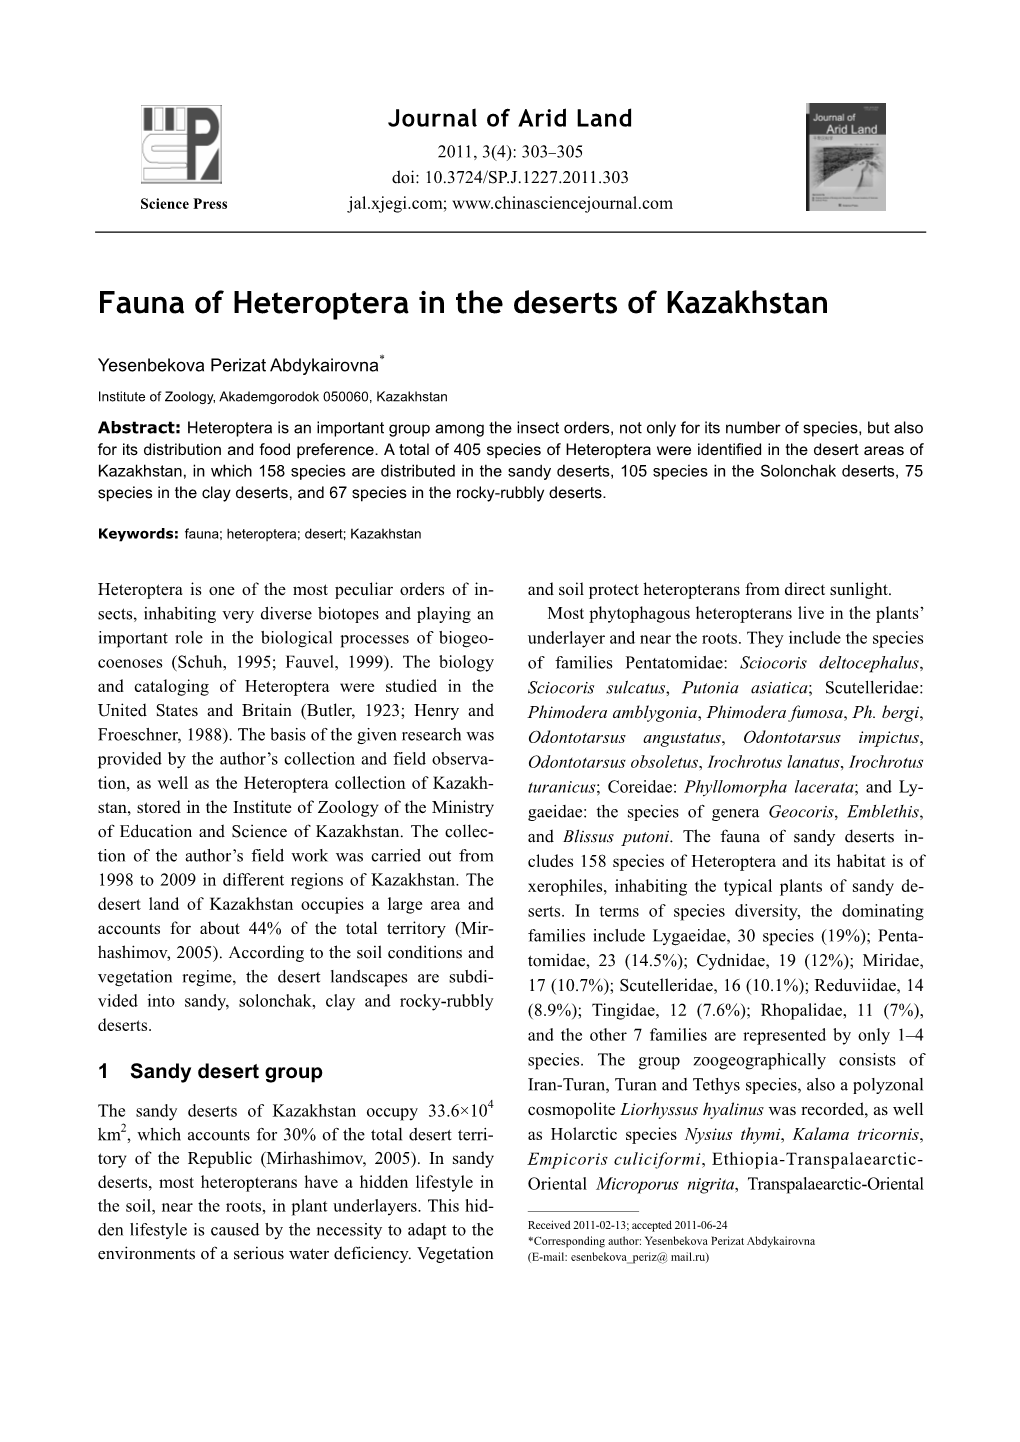 Fauna of Heteroptera in the Deserts of Kazakhstan